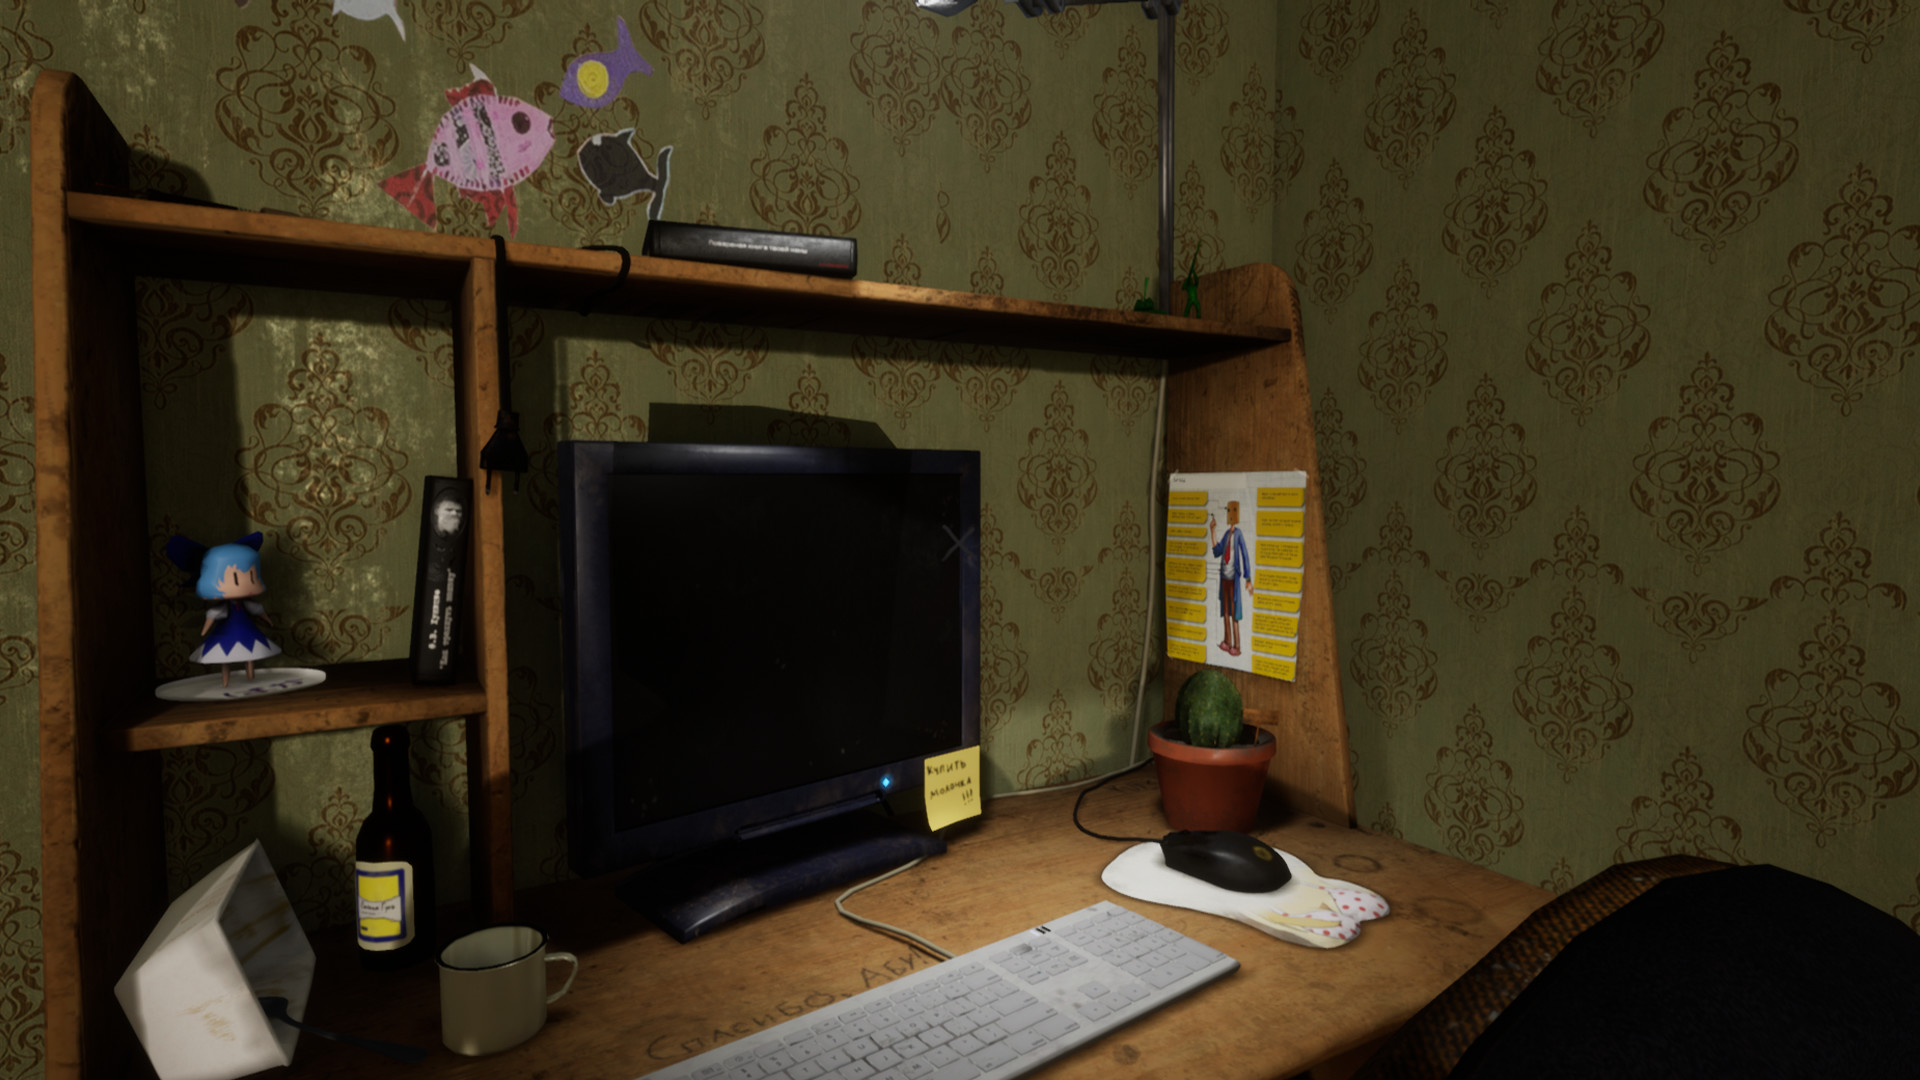 Owl Simulator screenshot